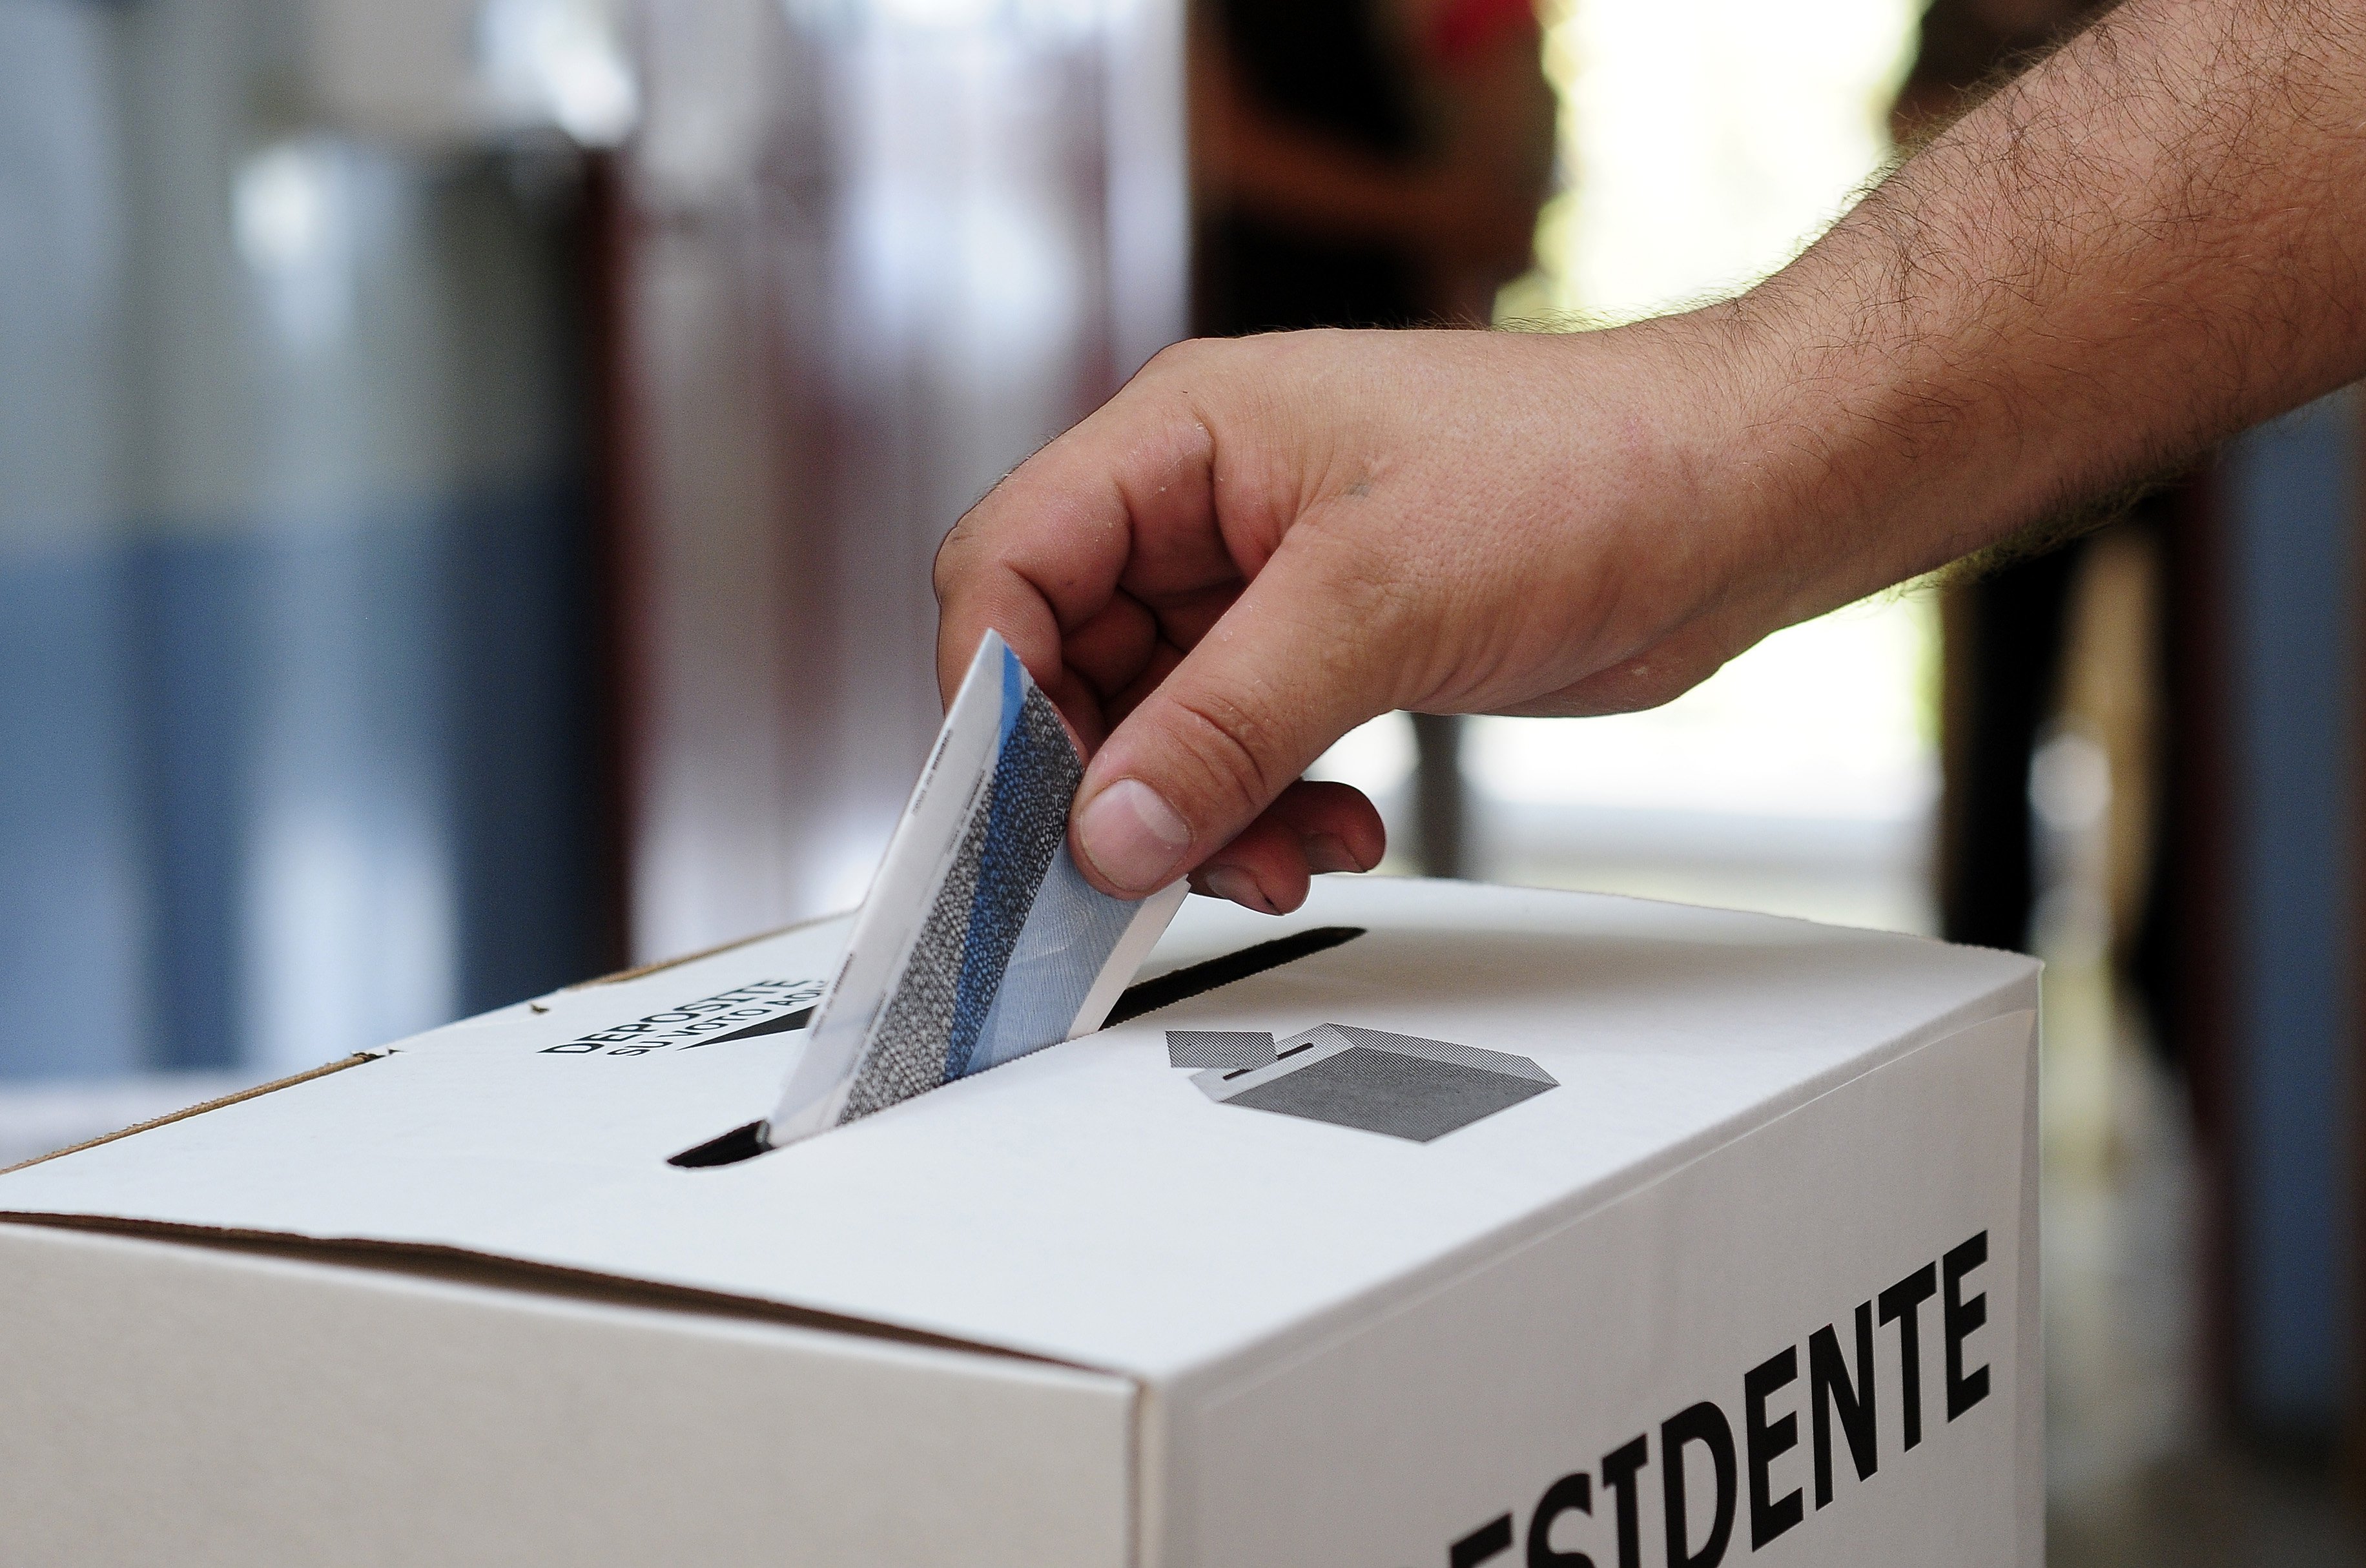 Más ticos podrán votar desde el extranjero en elecciones de 2018